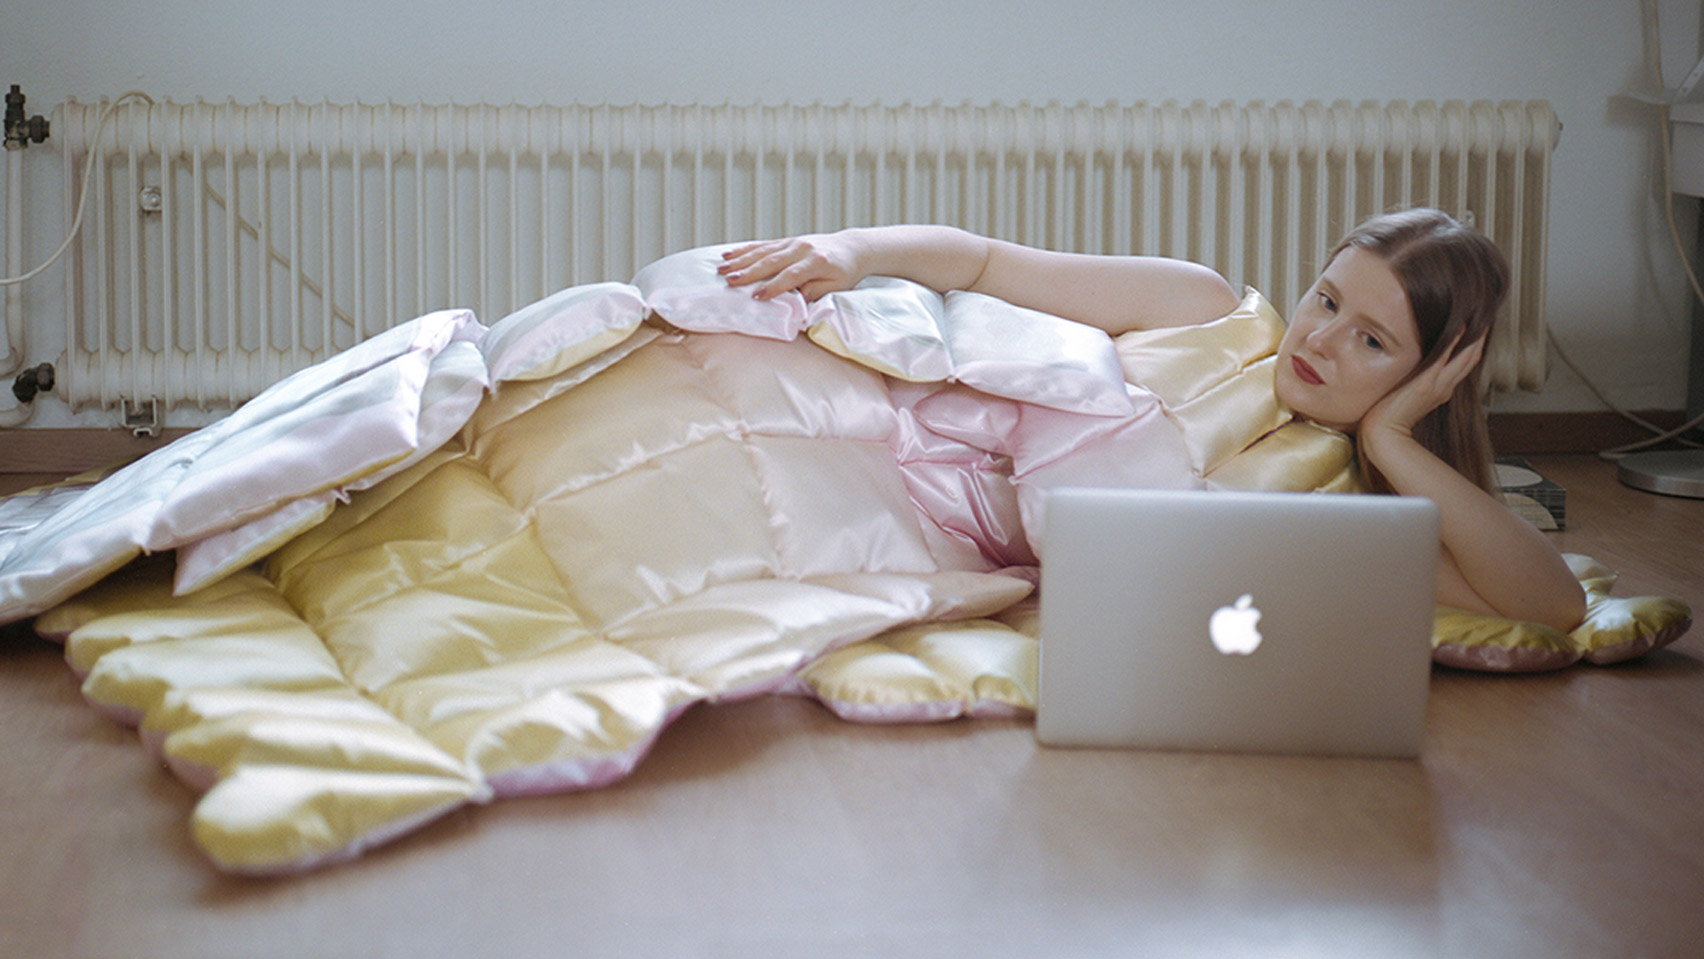 Платья из пуховых одеял. Латвийская дизайнерка создала коллекцию для зимнего карантина